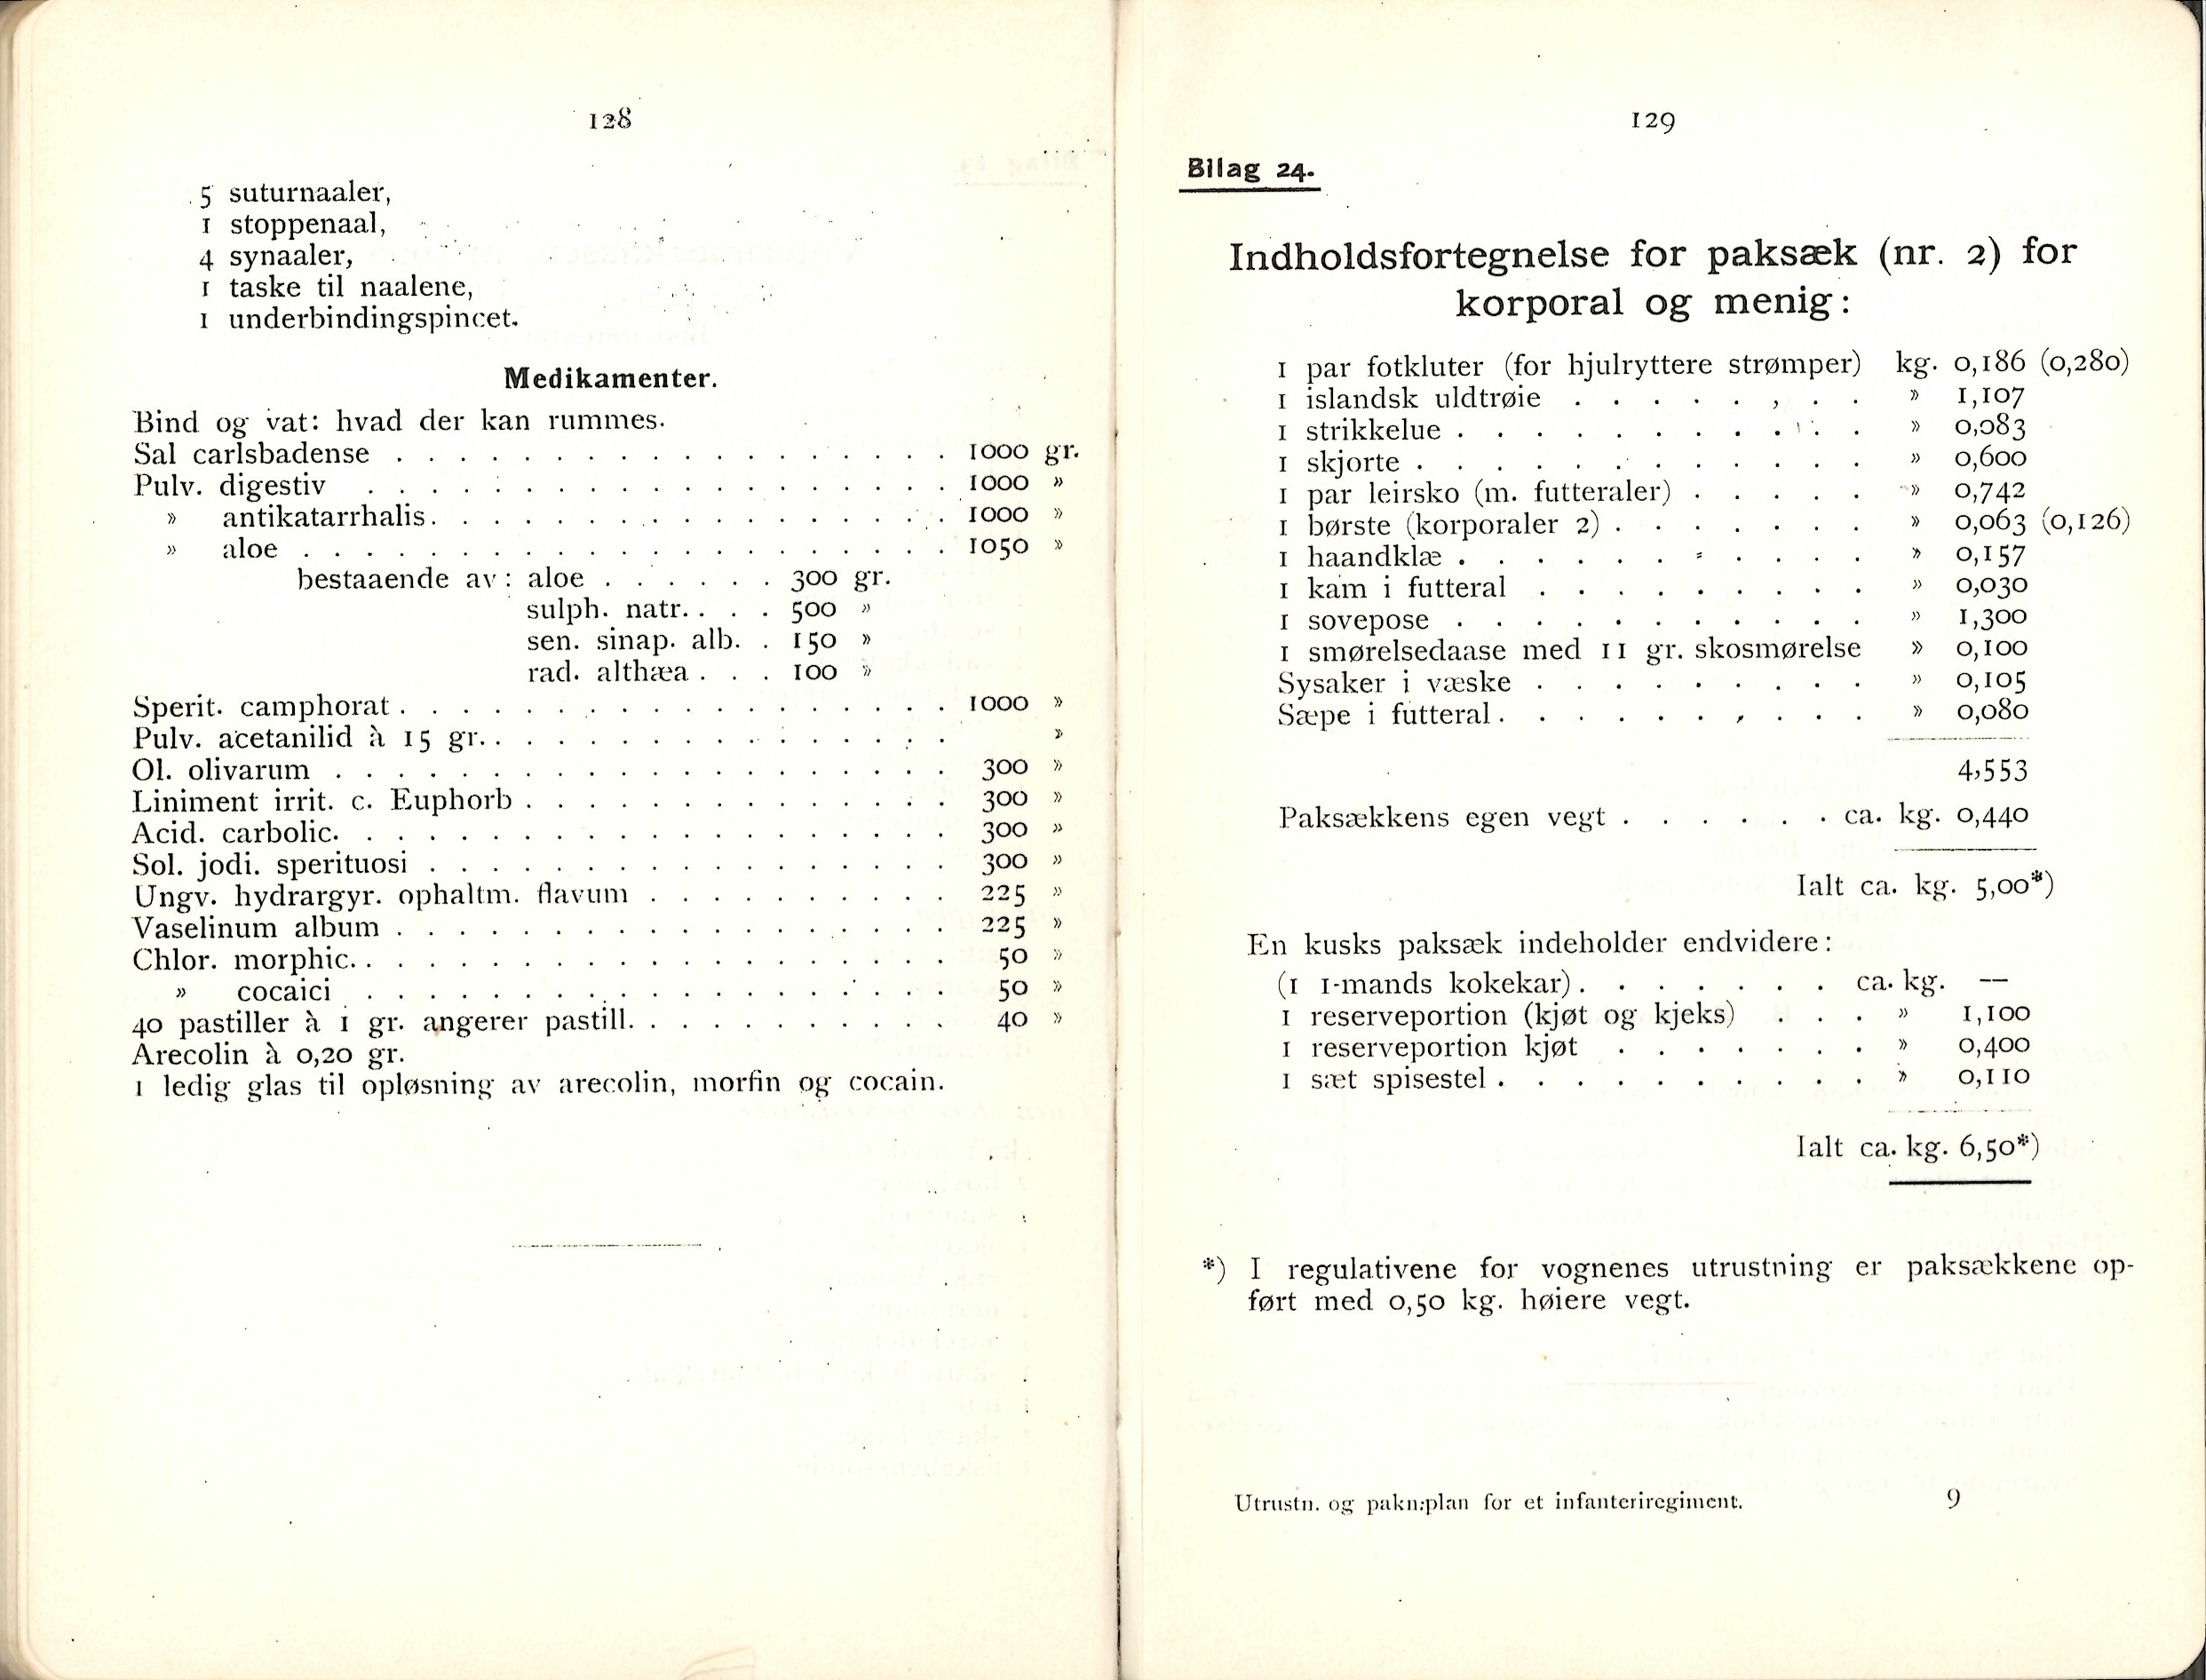 ./doc/reglement/Utrustning/Utrustnings-og-Pakningsplan-1917-20.jpg